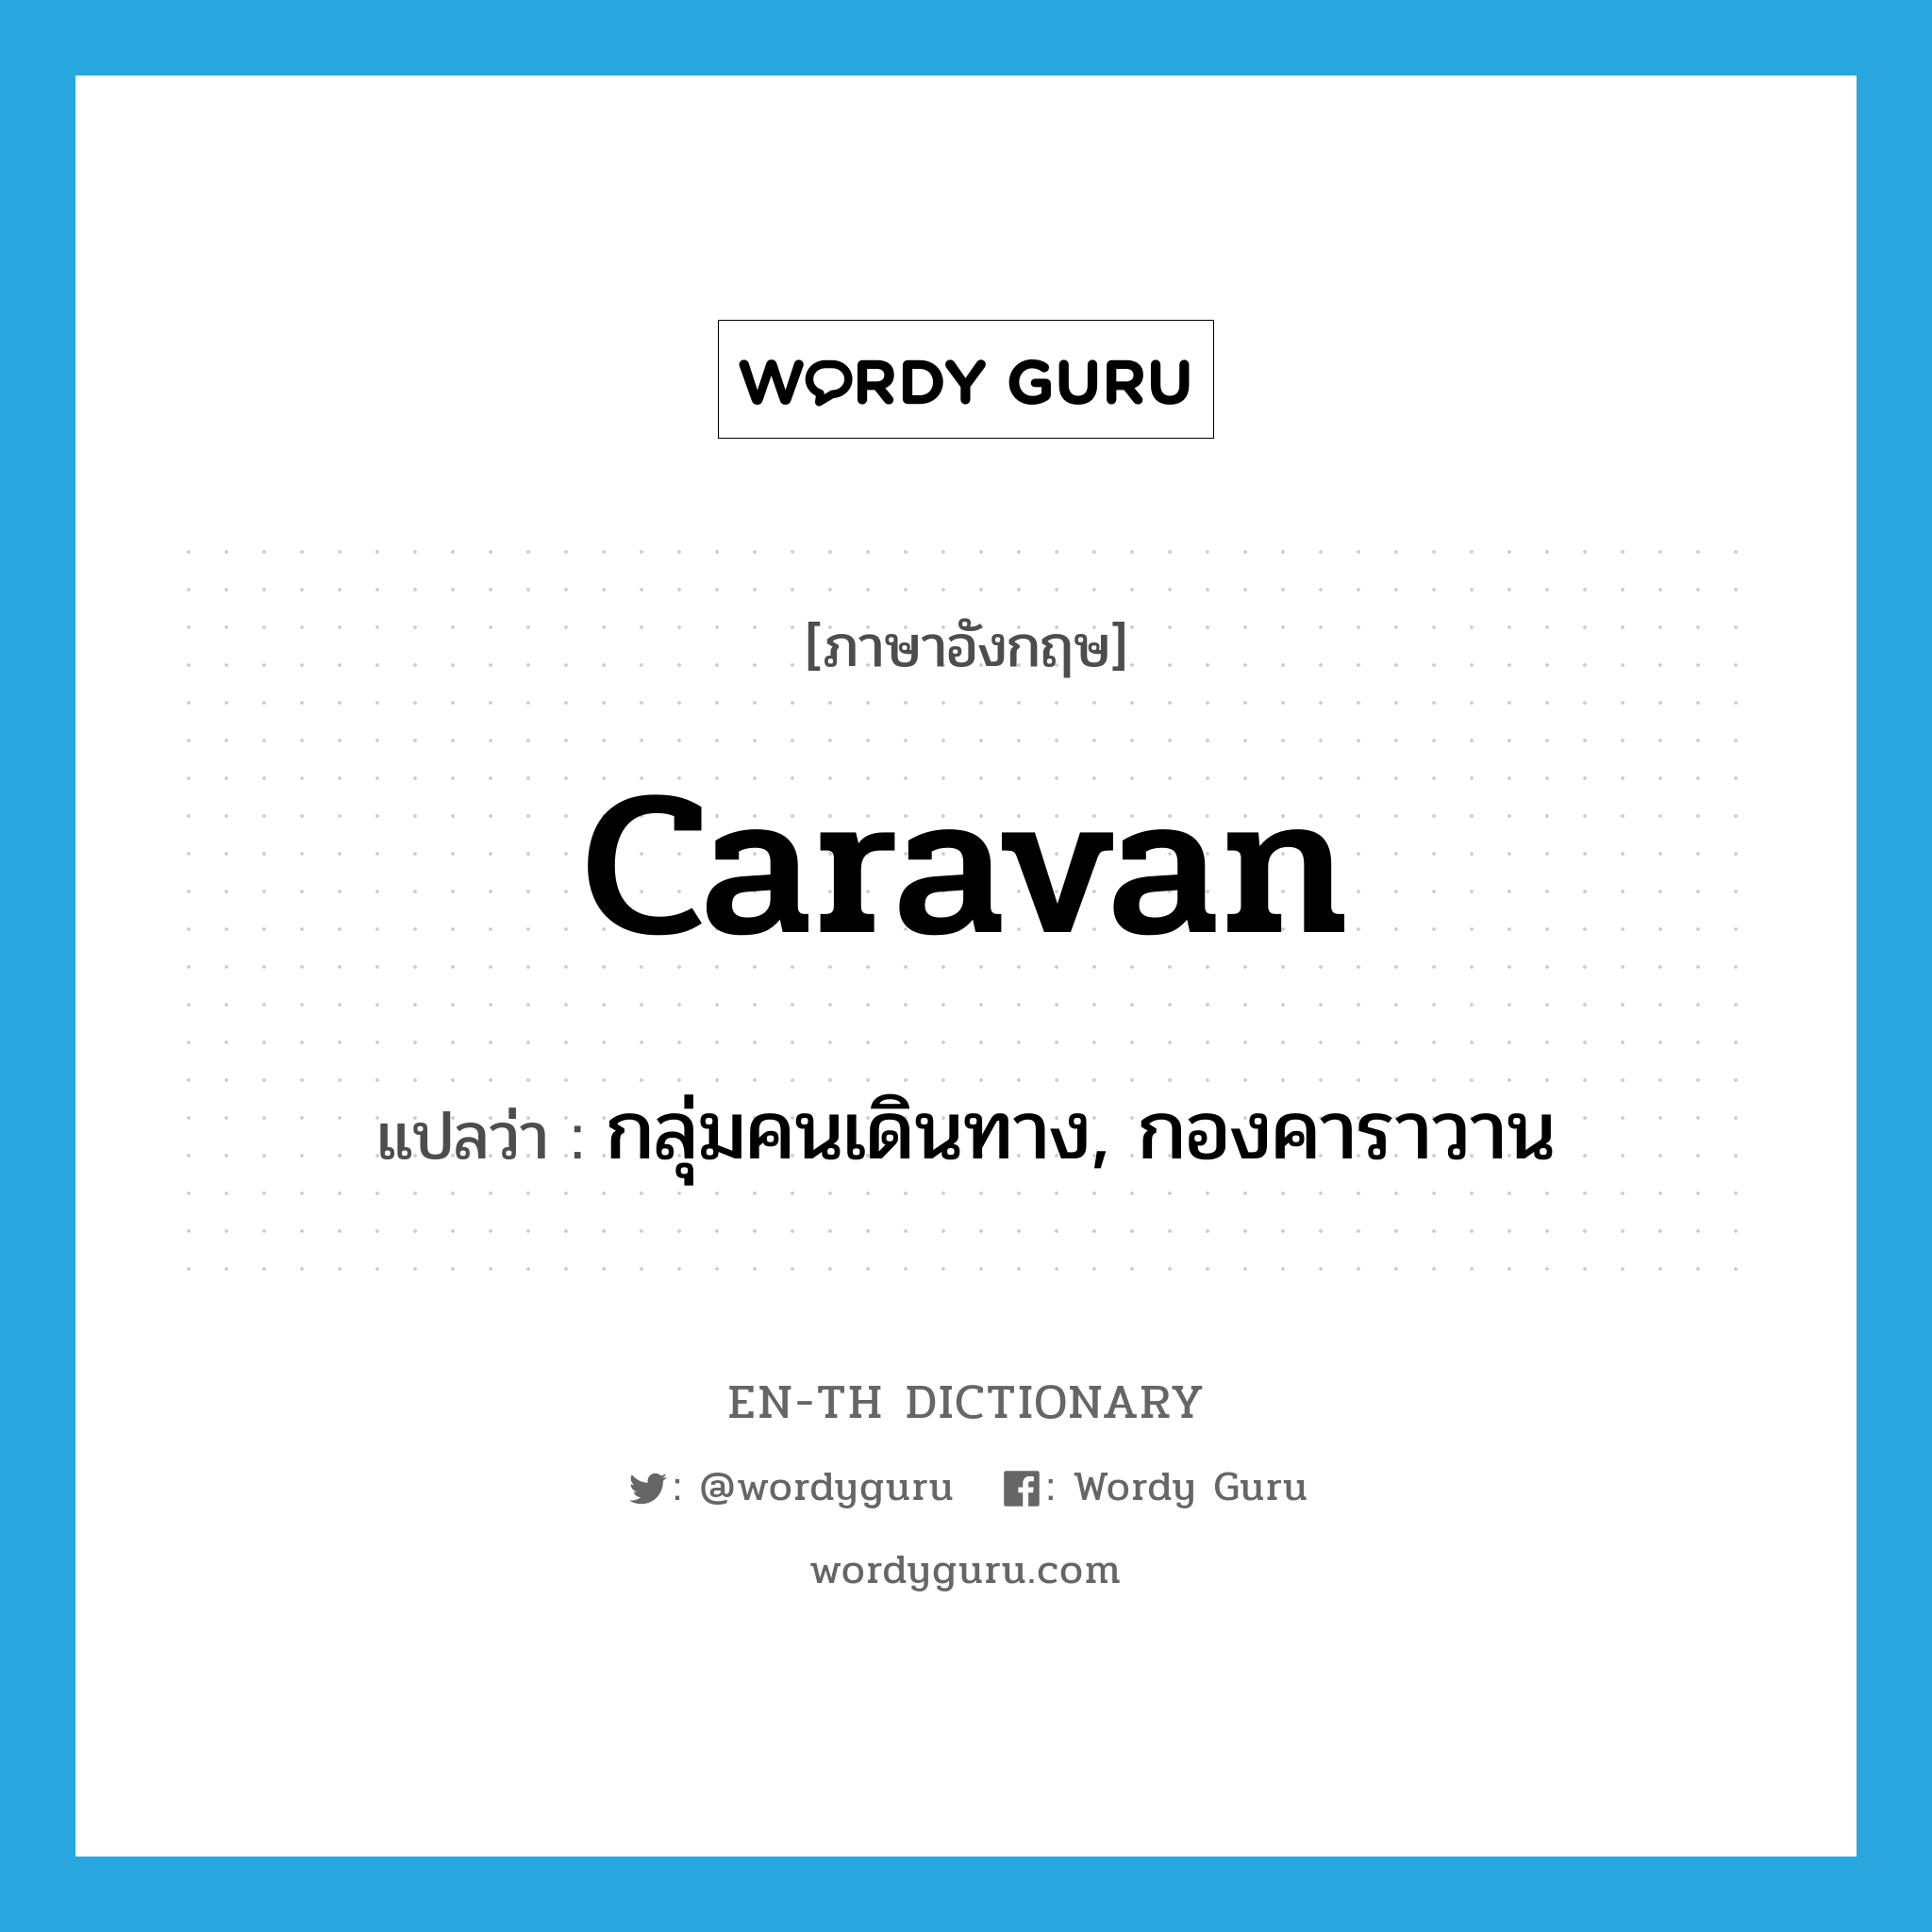 กลุ่มคนเดินทาง, กองคาราวาน ภาษาอังกฤษ?, คำศัพท์ภาษาอังกฤษ กลุ่มคนเดินทาง, กองคาราวาน แปลว่า caravan ประเภท N หมวด N